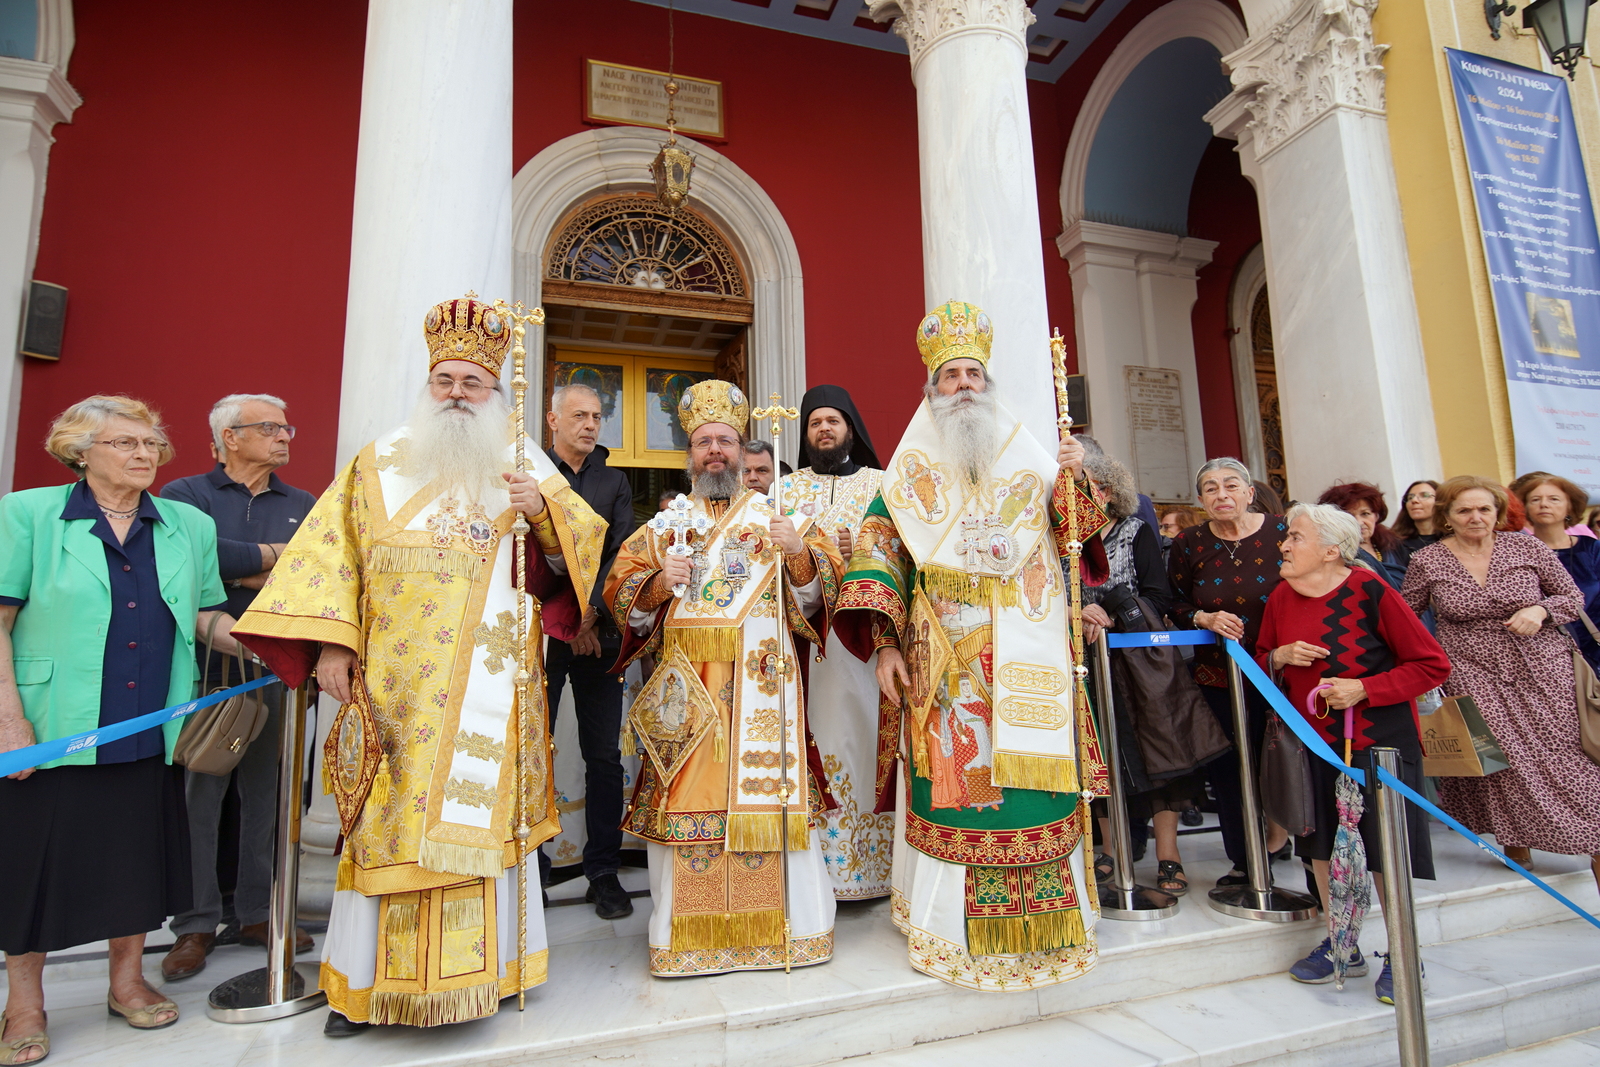 Πάνδημος ο εορτασμός των Αγίων Κωνσταντίνου και Ελένης στον πανηγυρίζοντα Μητροπολιτικό Ιερό Ναό του Πειραιά.